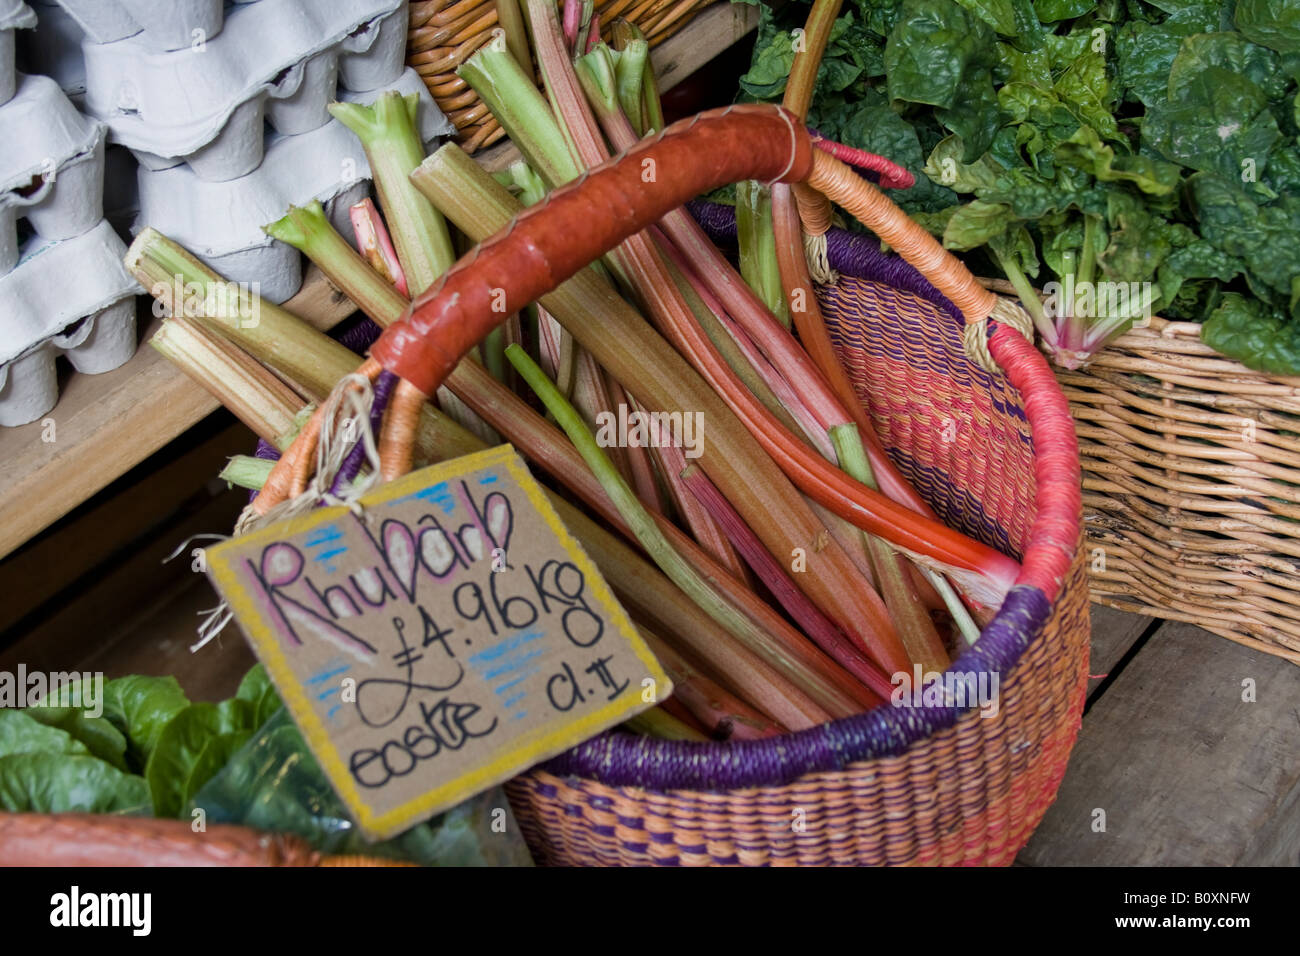 Organischer Rhabarber in Norwich Markt Stockfoto